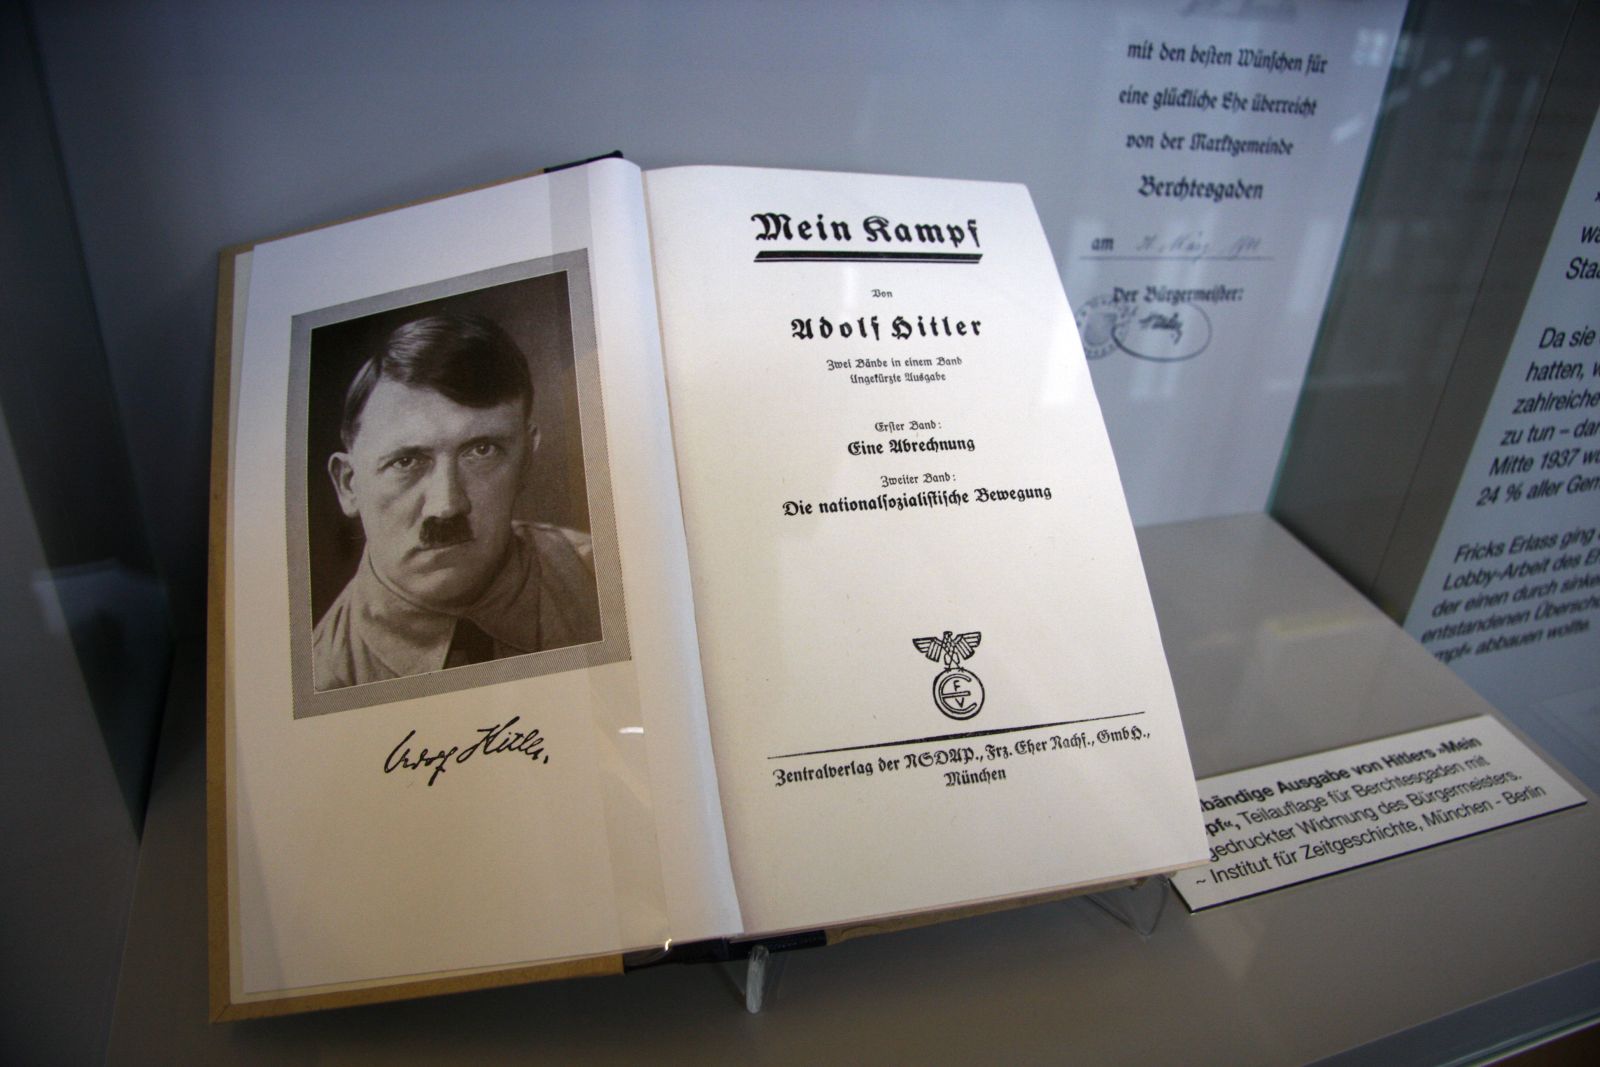 Za miesiąc wygasną prawa autorskie do „Mein Kampf” Adolfa Hitlera